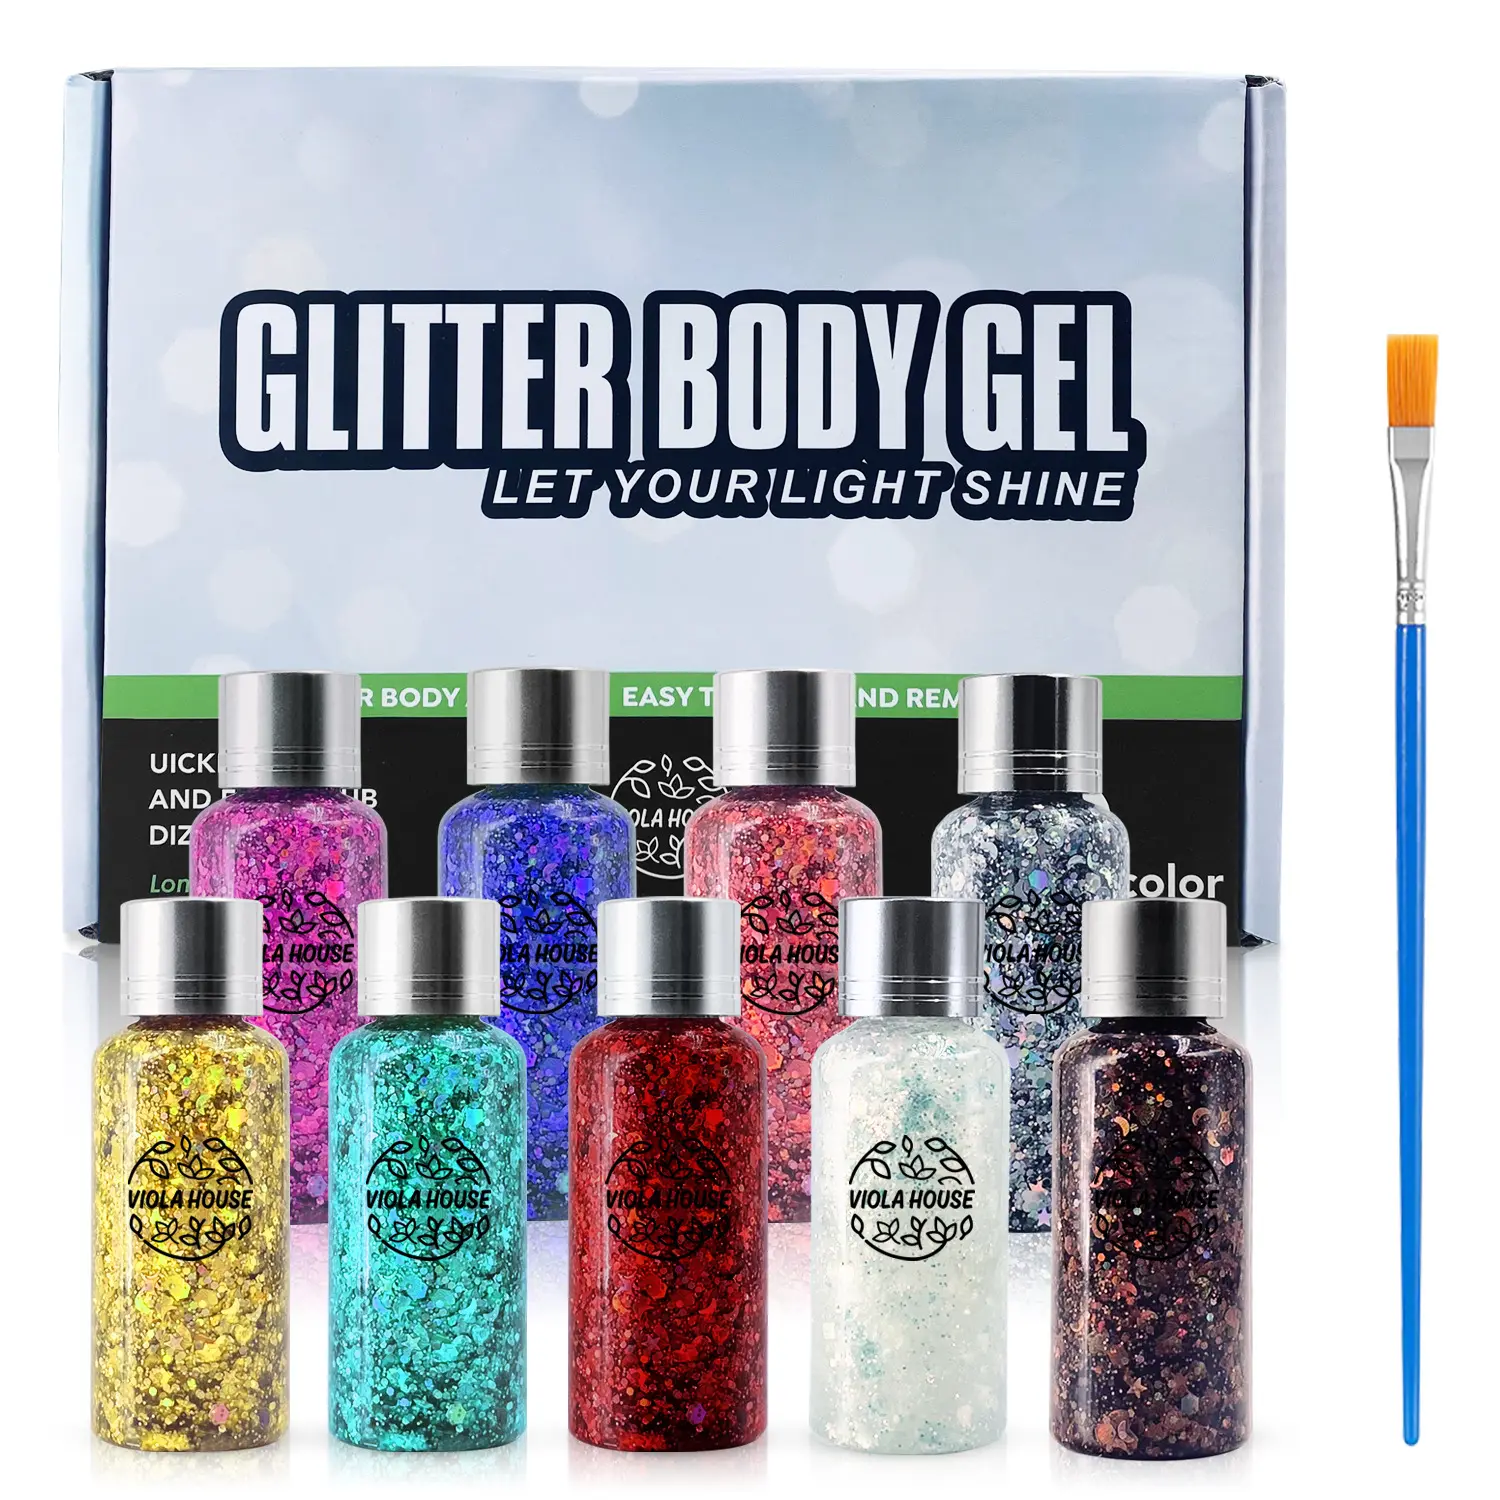 Vücut Glitter jel dokuz renk seti Mineral göz farı tırnak su geçirmez uzun ömürlü yüz sahne makyaj Glitter madeni pul jel